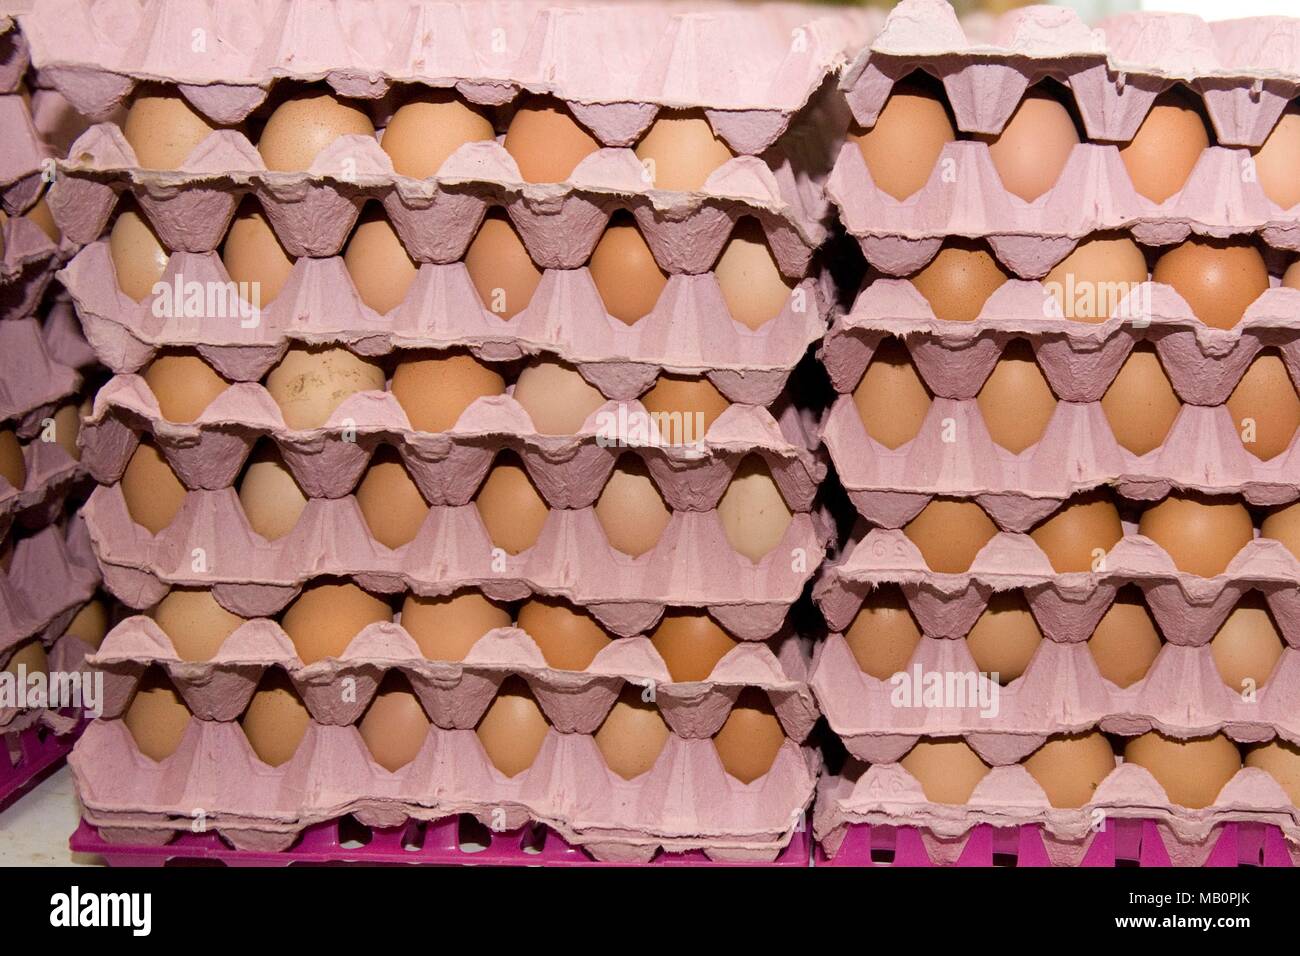 Los huevos en bandejas Foto de stock